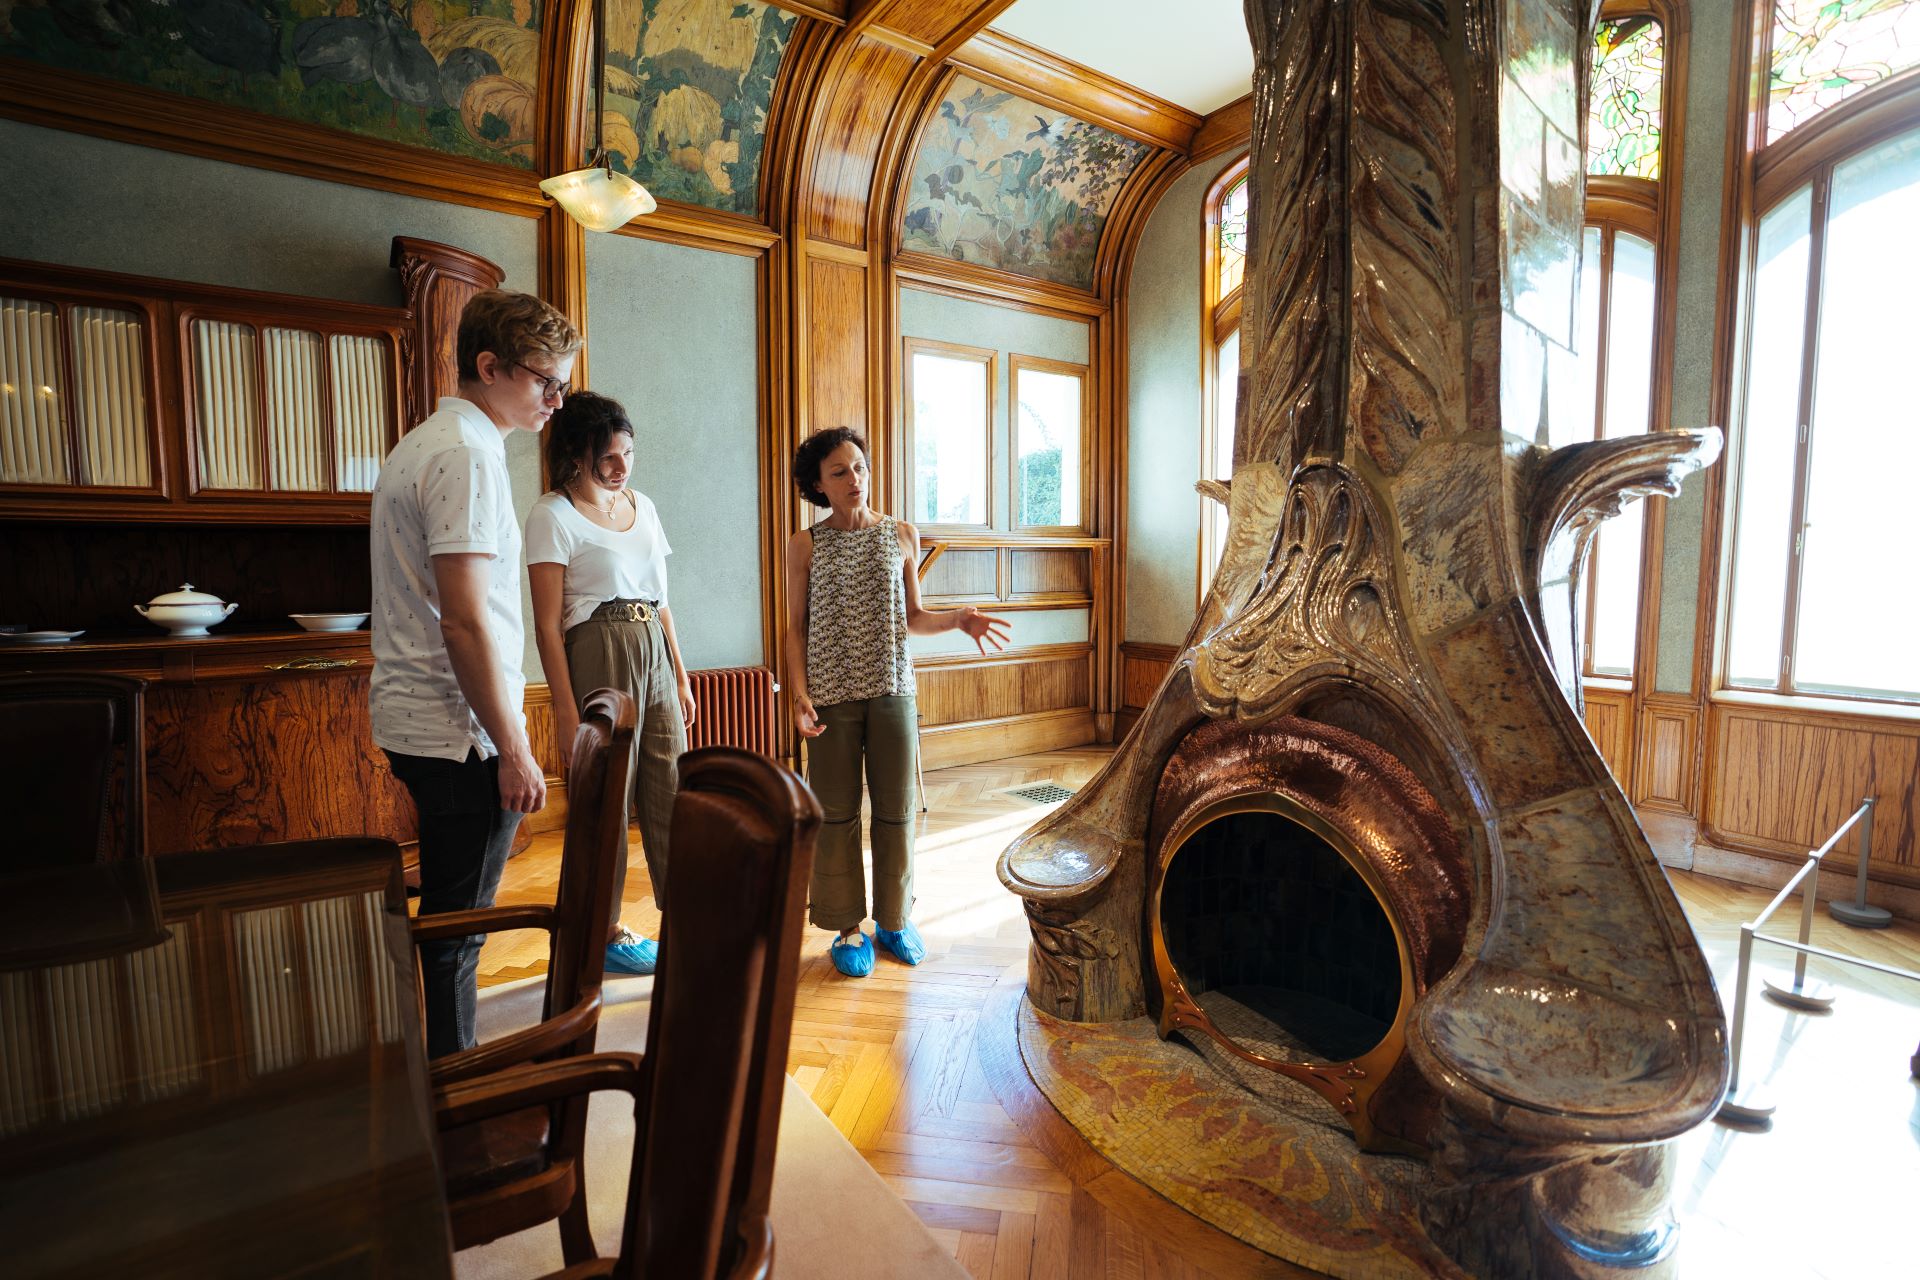 À l'intérieur du bâtiment, la guide montre à ses invités l'influence de la nature sur l'architecte. Une cheminée ancienne est construite dans des formes naturellement courbes.